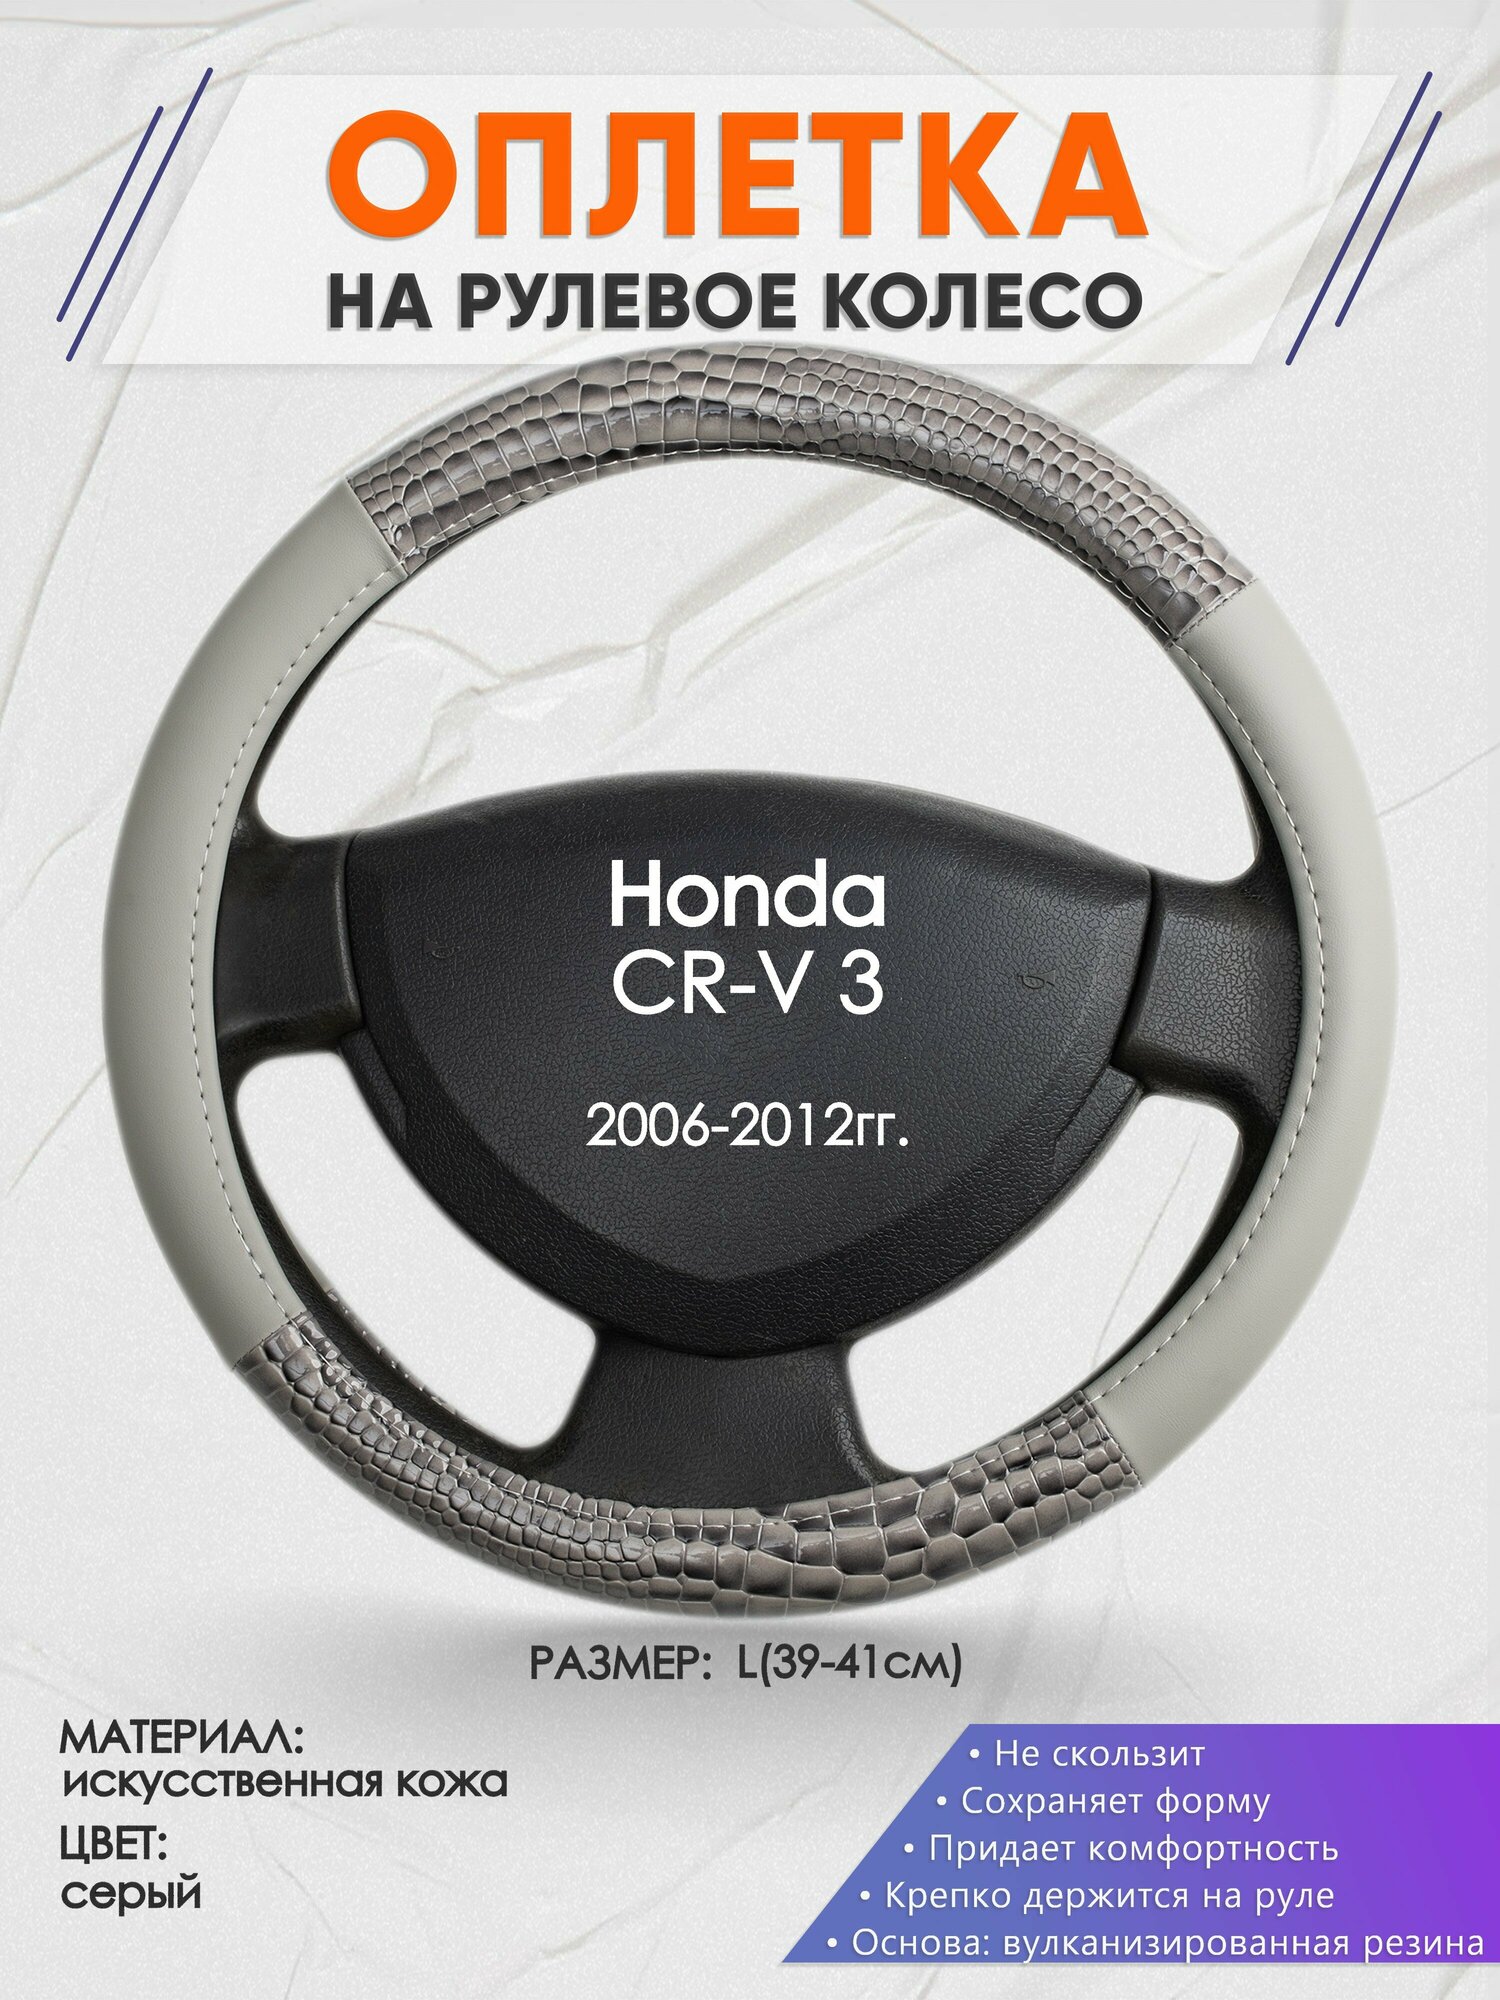 Оплетка на руль для Honda CR-V 3(Хонда срв 3) 2006-2012, L(39-41см), Искусственная кожа 84